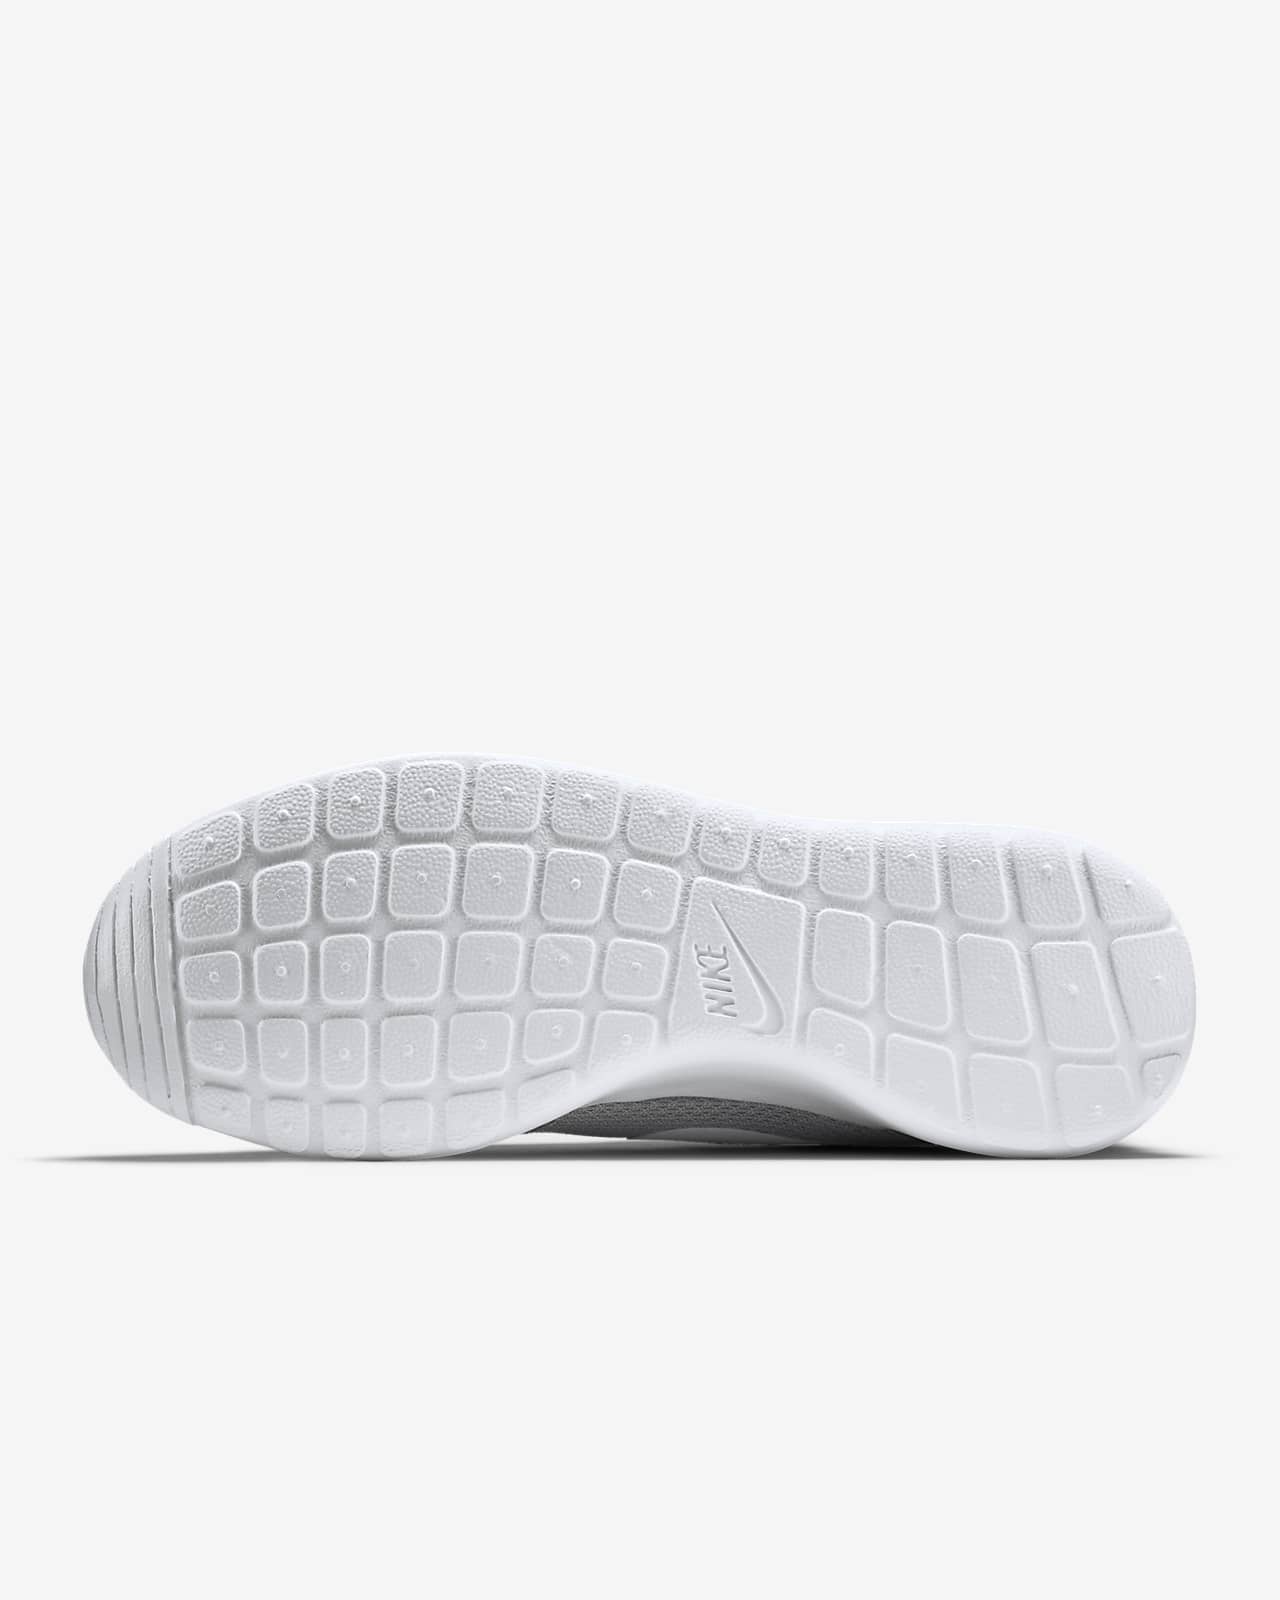 Roshe Men's Shoe. Nike.com